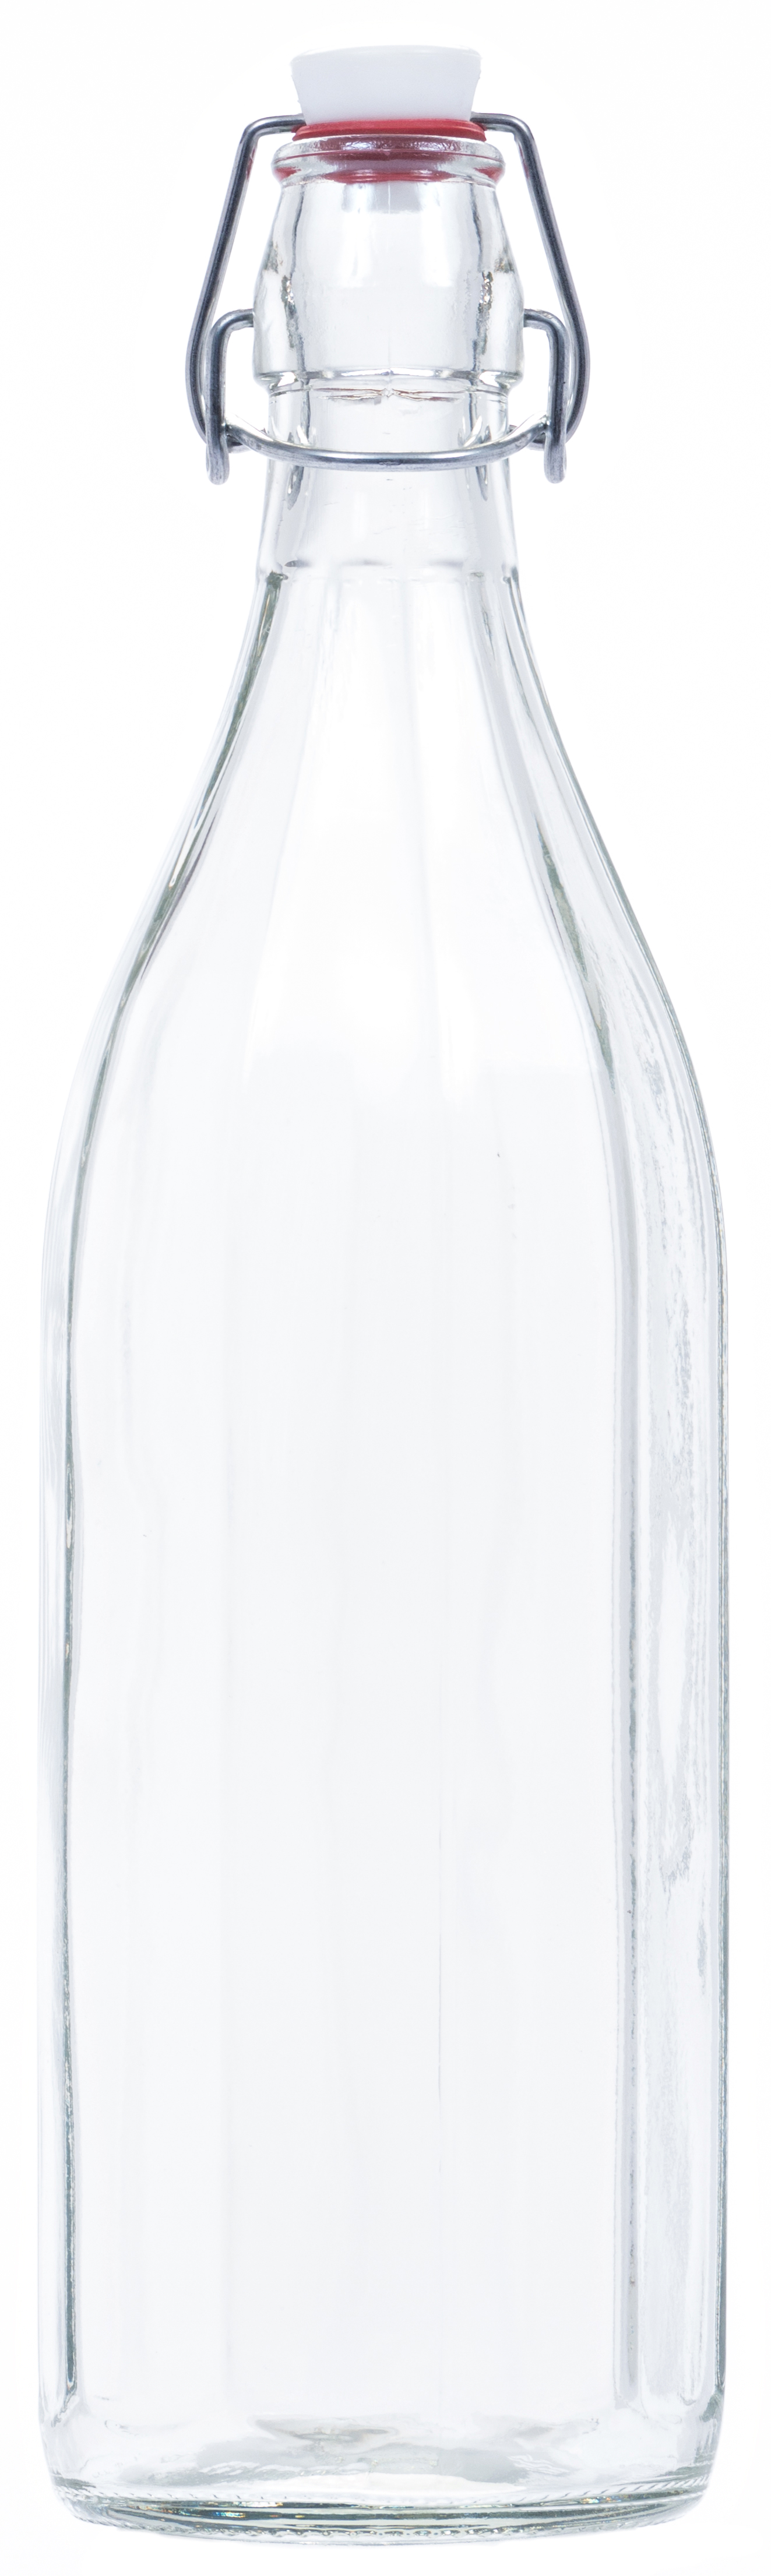 Glasflasche mit Bügelverschluss 0,75 l